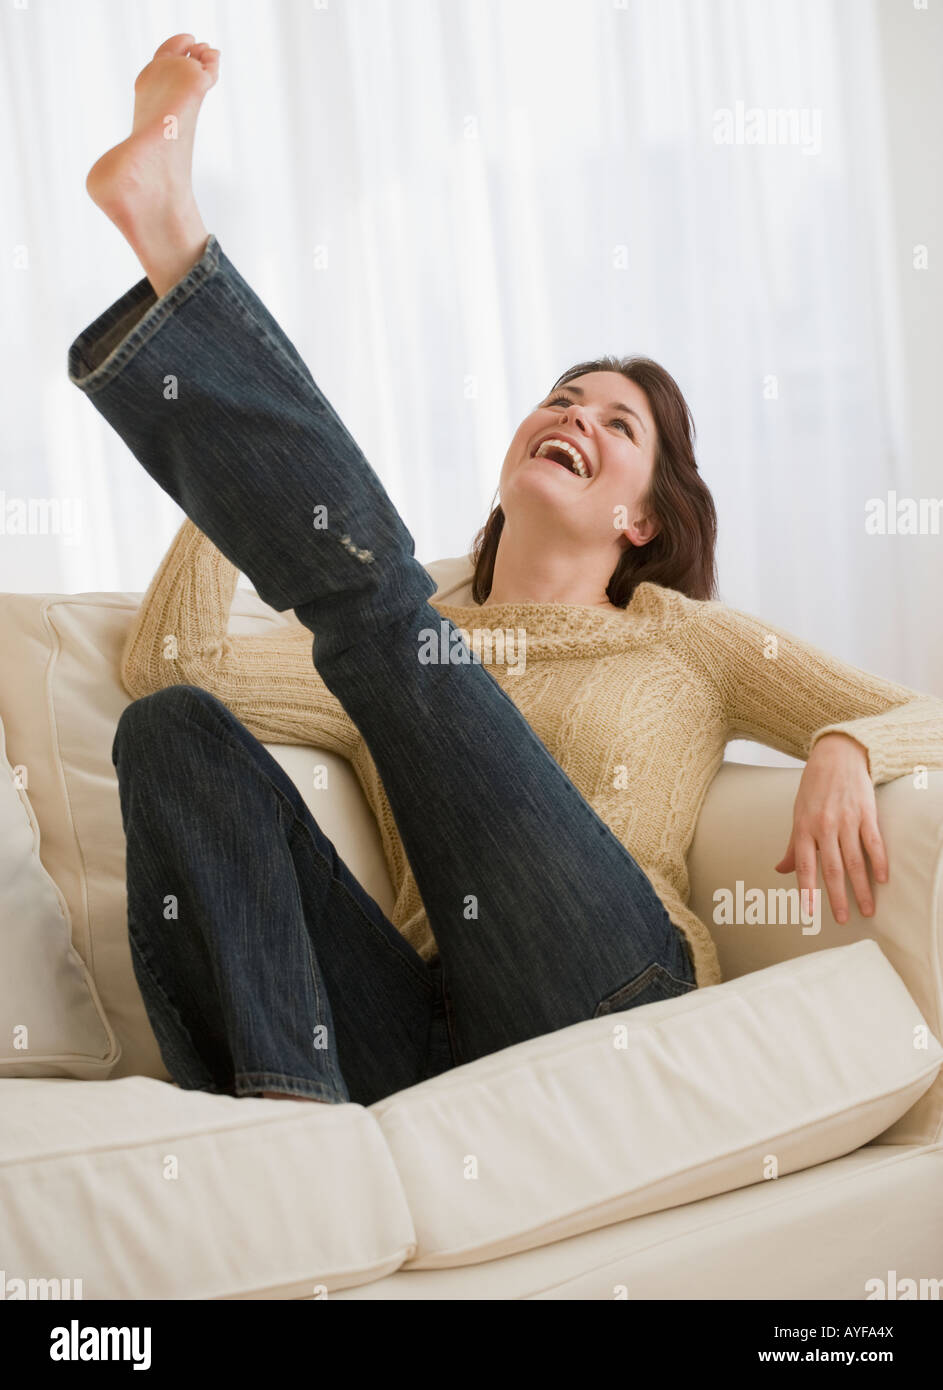 Woman kicking leg on sofa Stock Photo